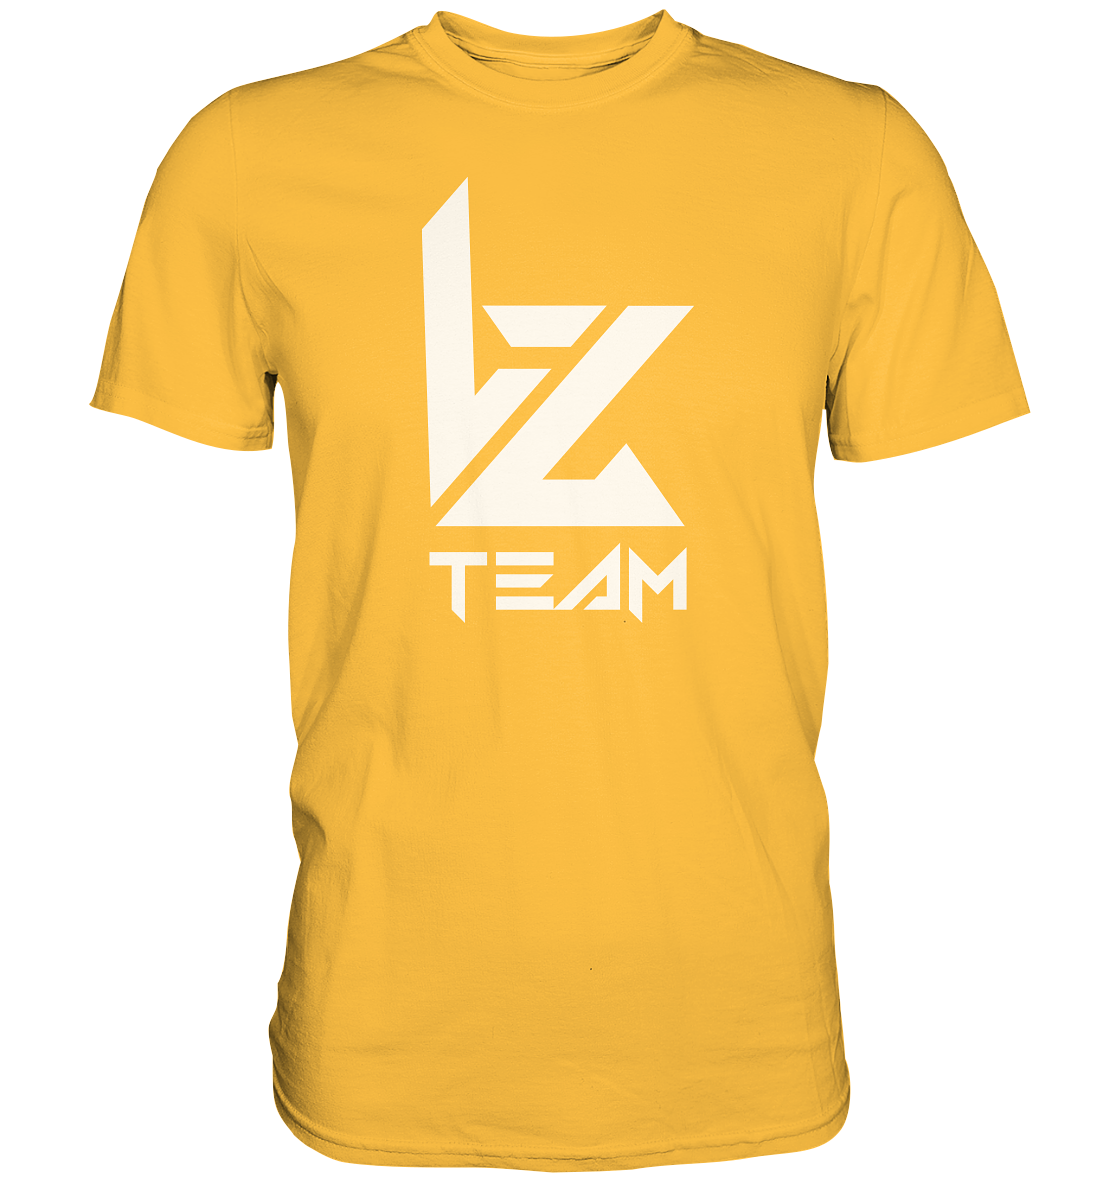 TEAM VZ - Basic Shirt